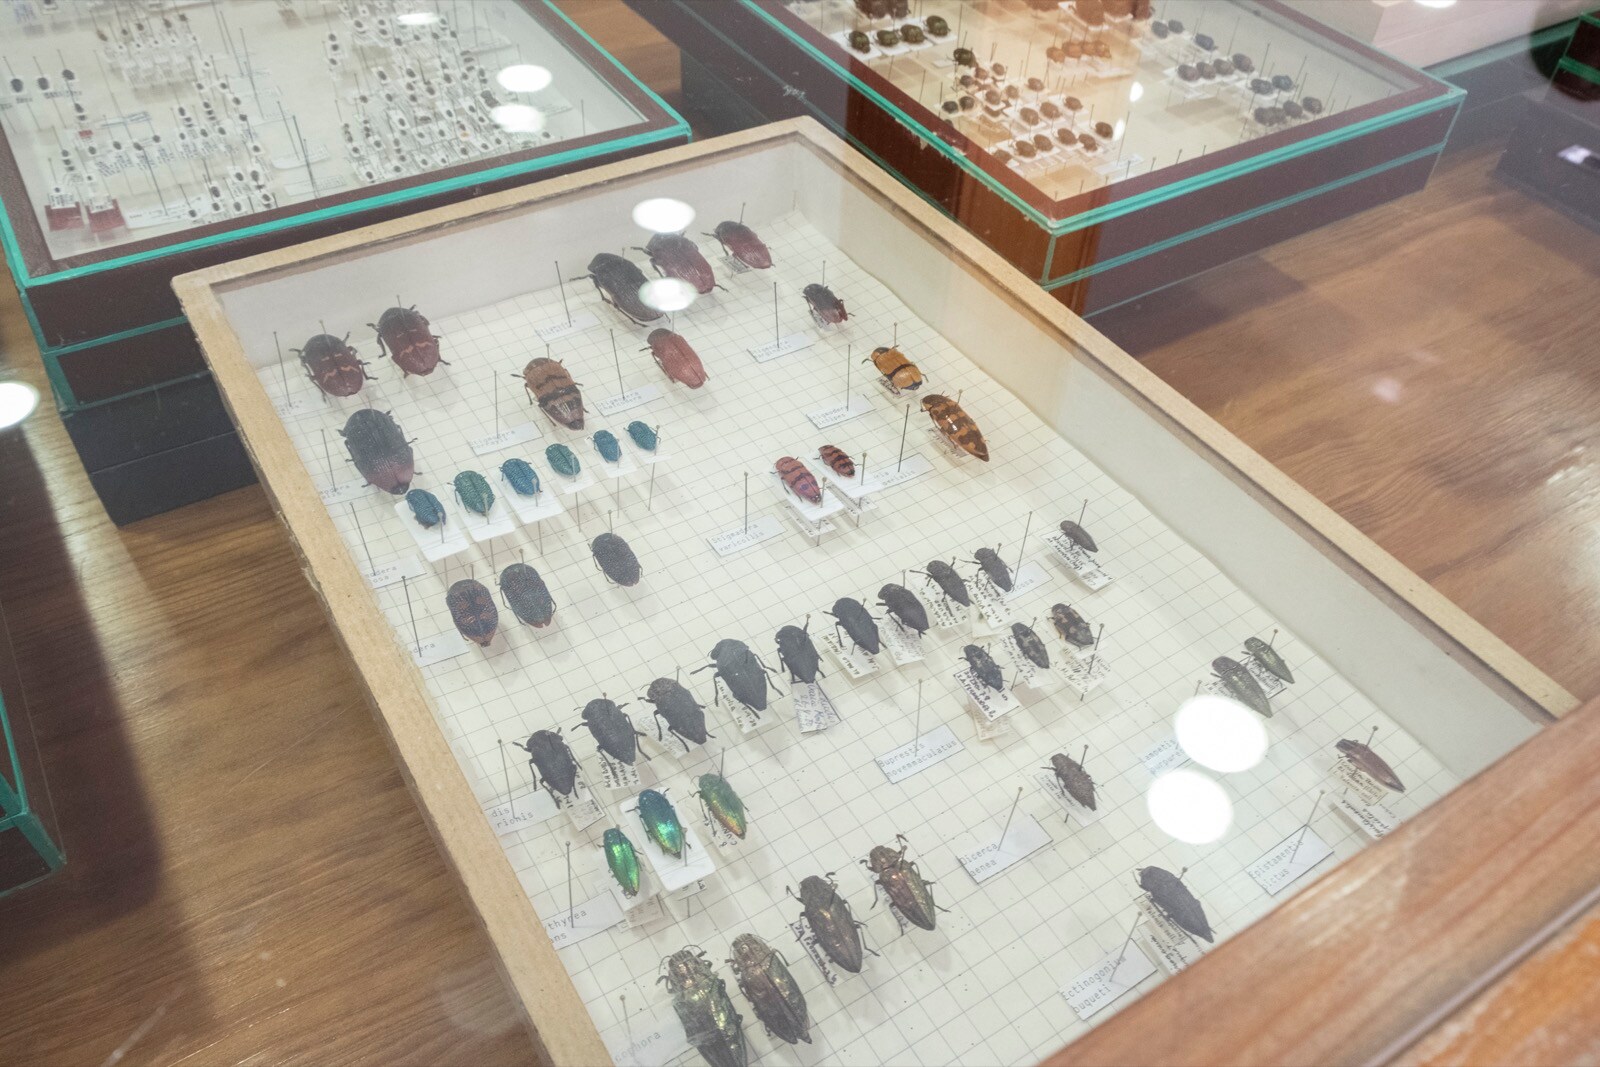 La UGR cuenta con una colección en el departamento de Zoología de más 200.000 ejemplares y 10.000 especies